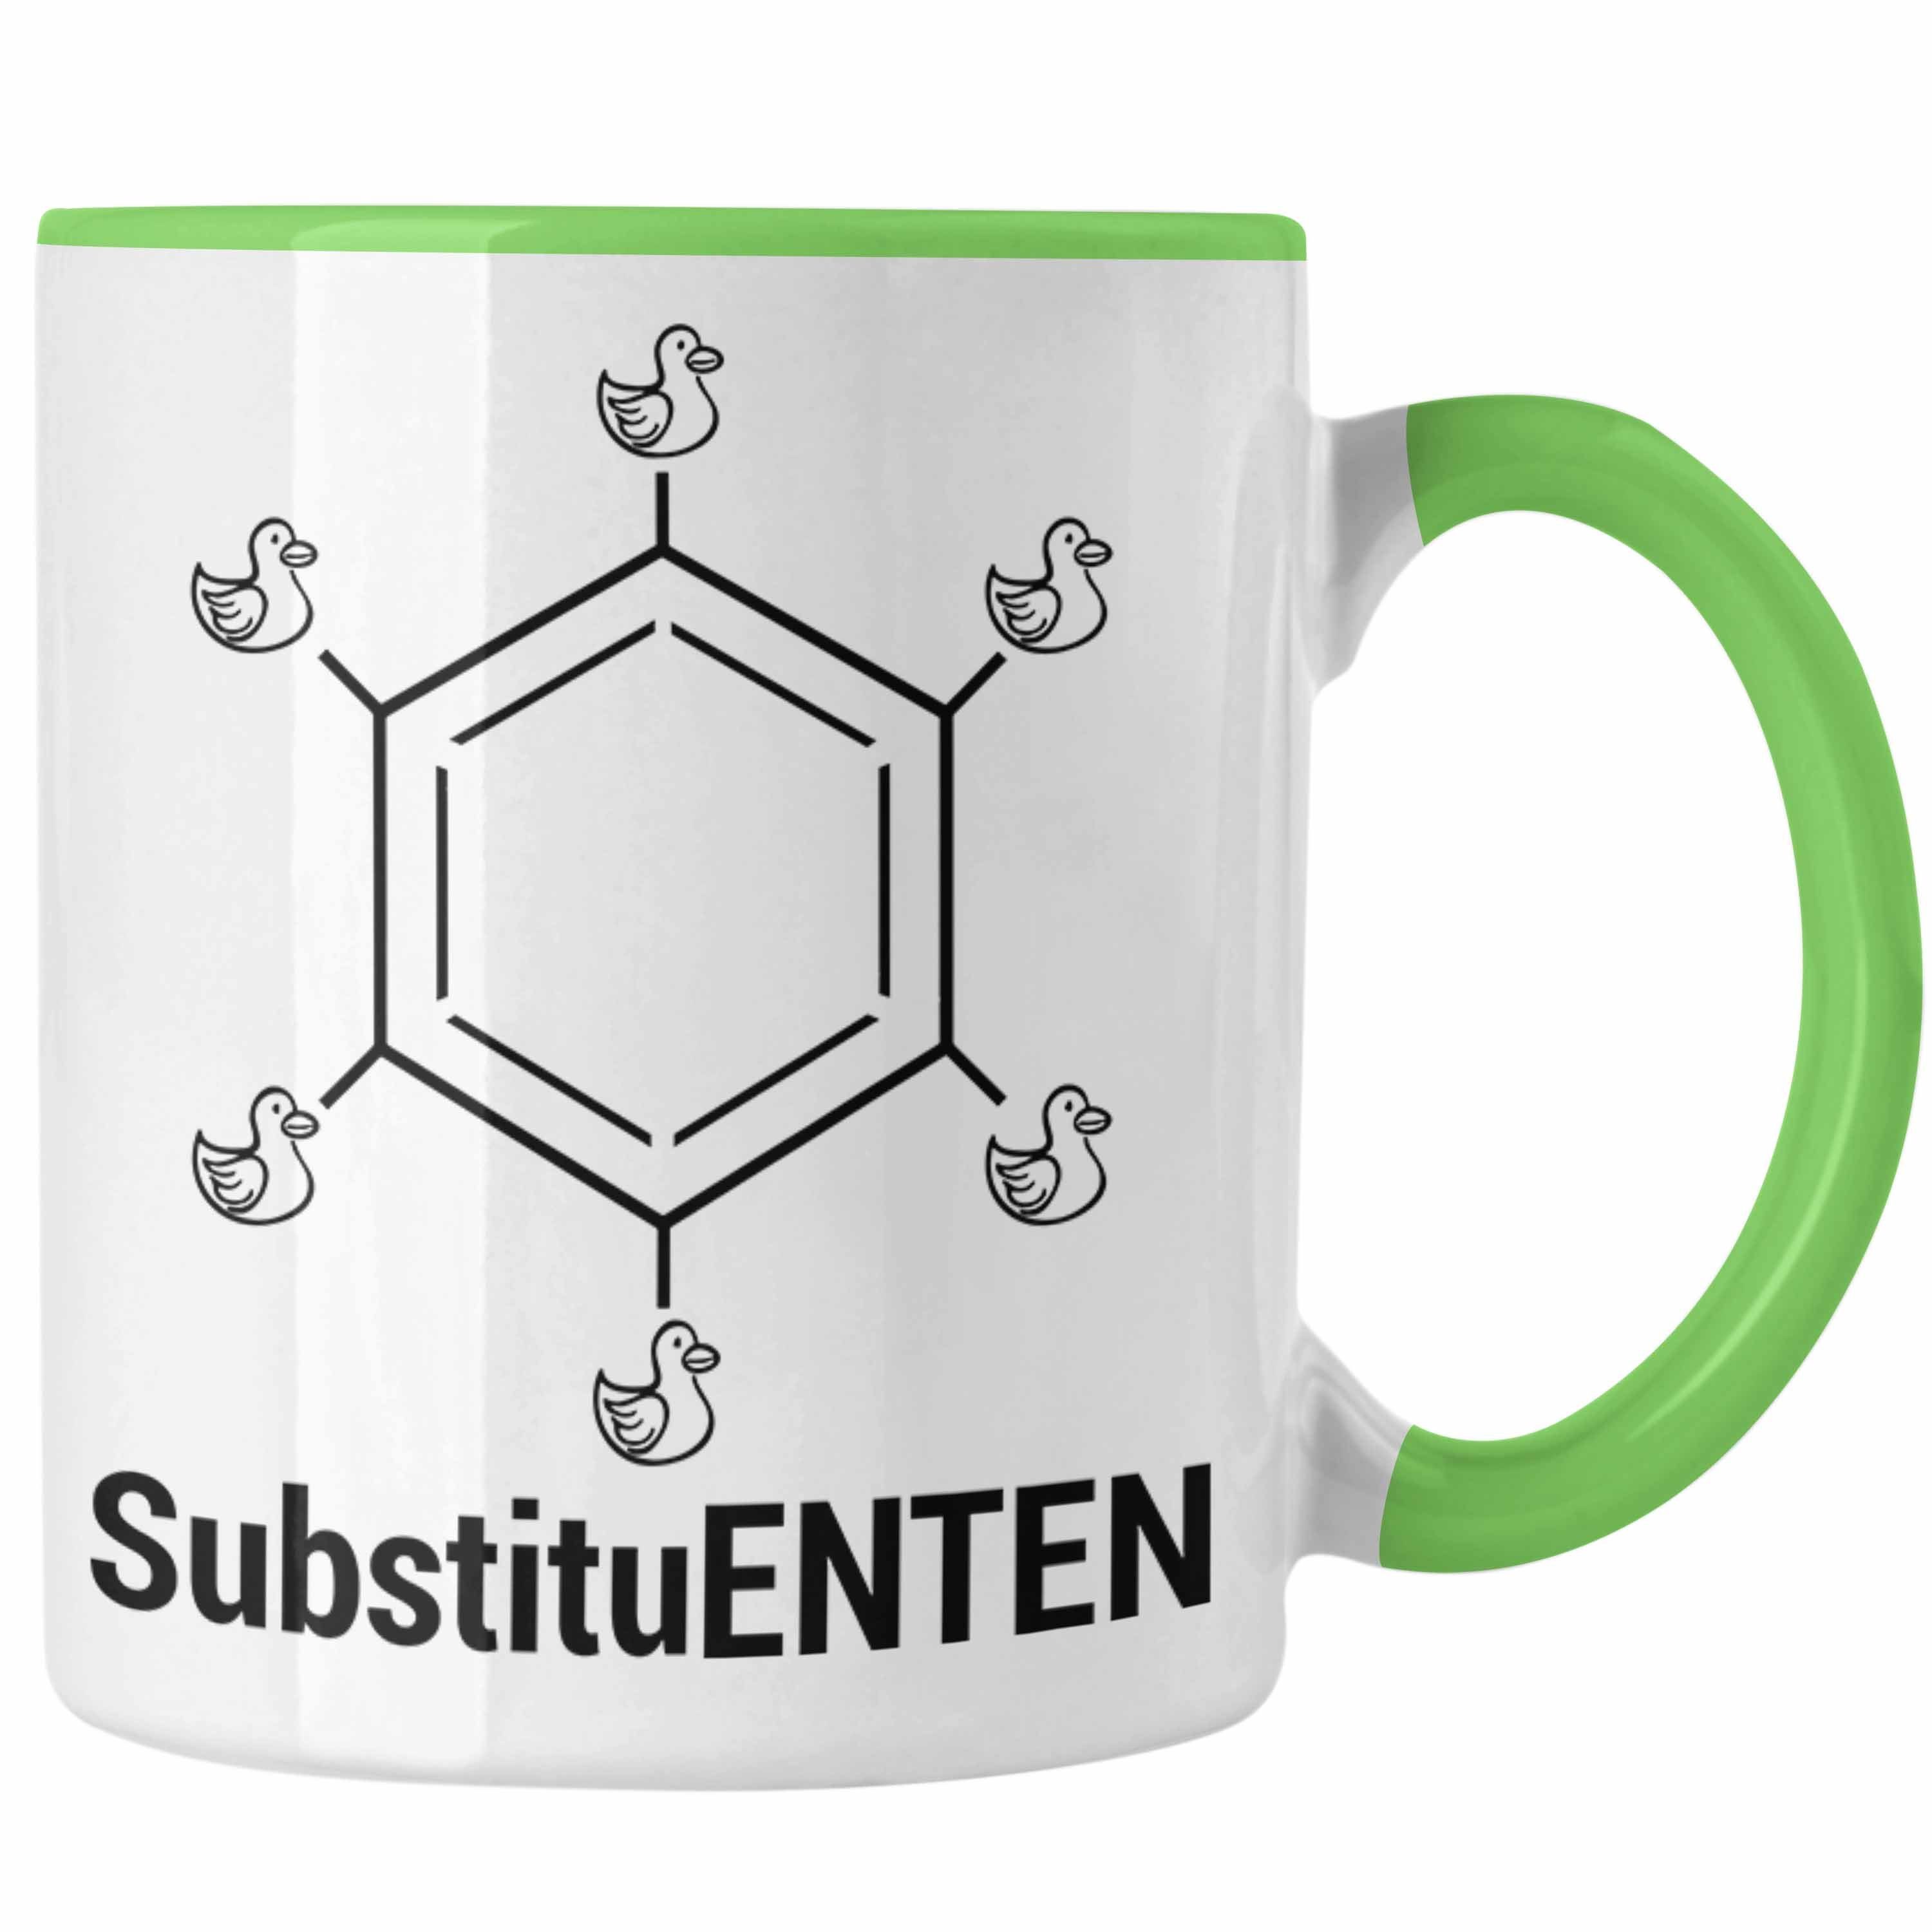 SubstituENTEN Organische Grün Tasse Kaffee Tasse Chemie Trendation Chemiker Chemie Witz Ente